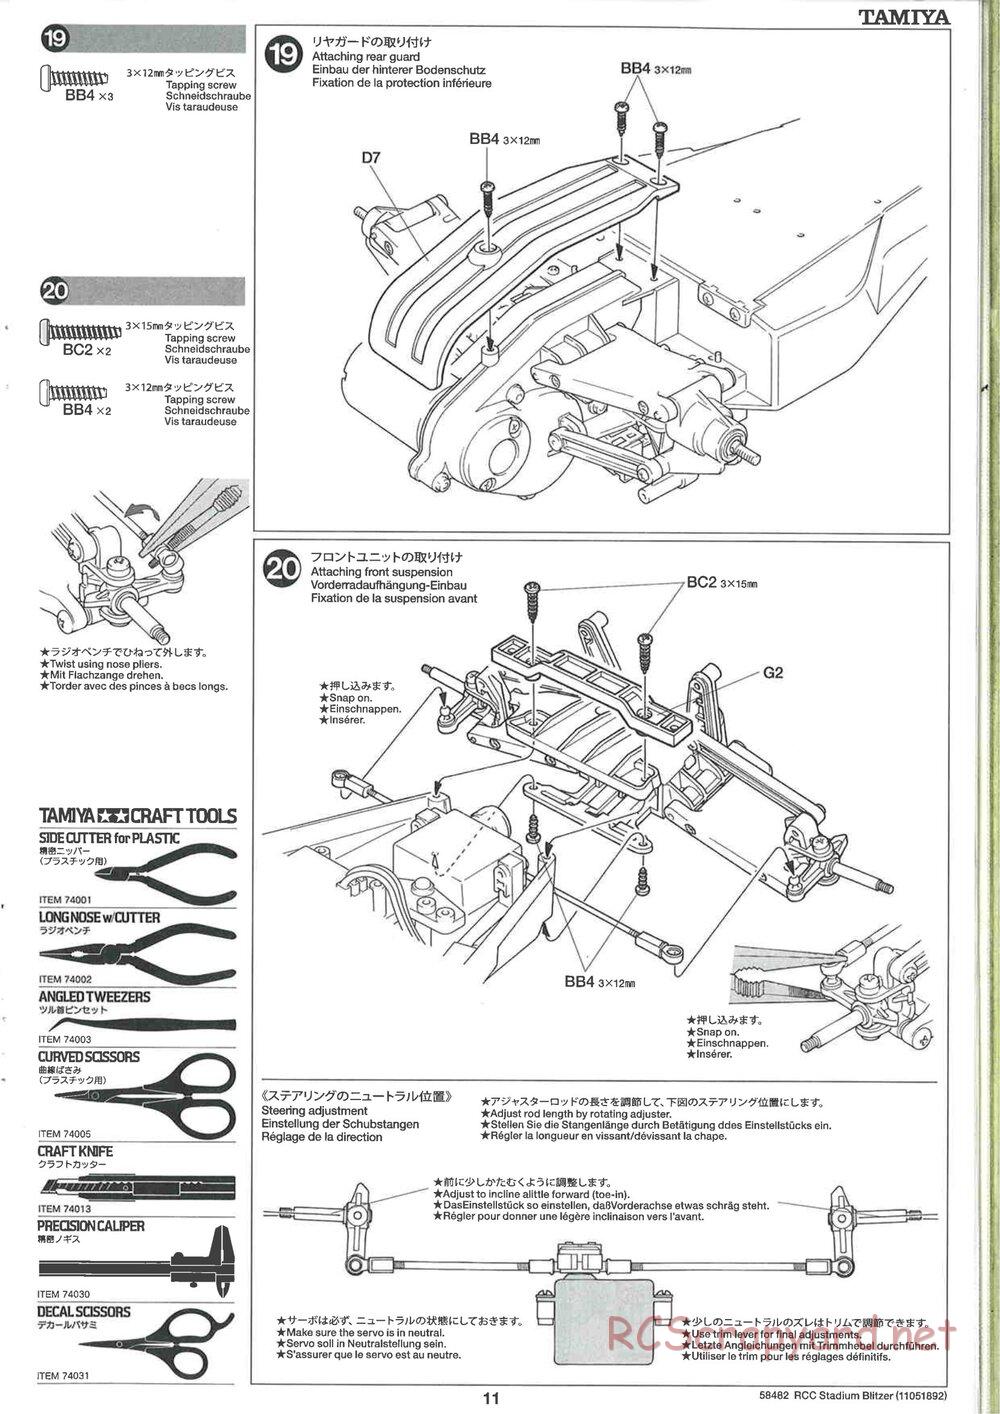 Tamiya - Stadium Blitzer 2010 - FAL Chassis - Manual - Page 11